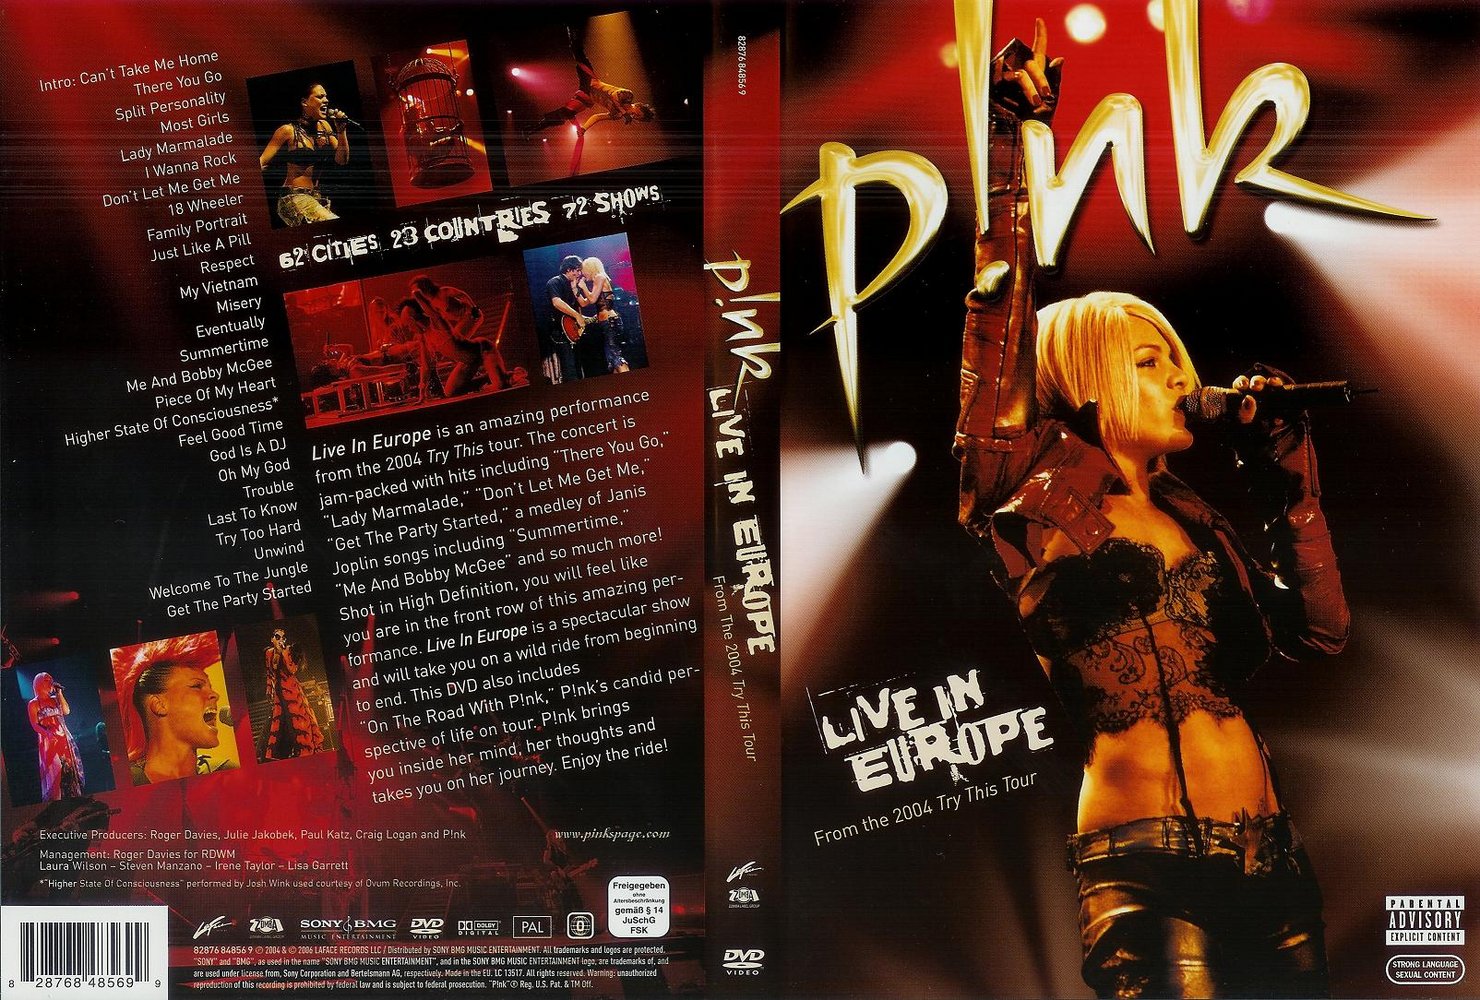 Jaquette Dvd De Pink Live In Europe 2004 Cinéma Passion